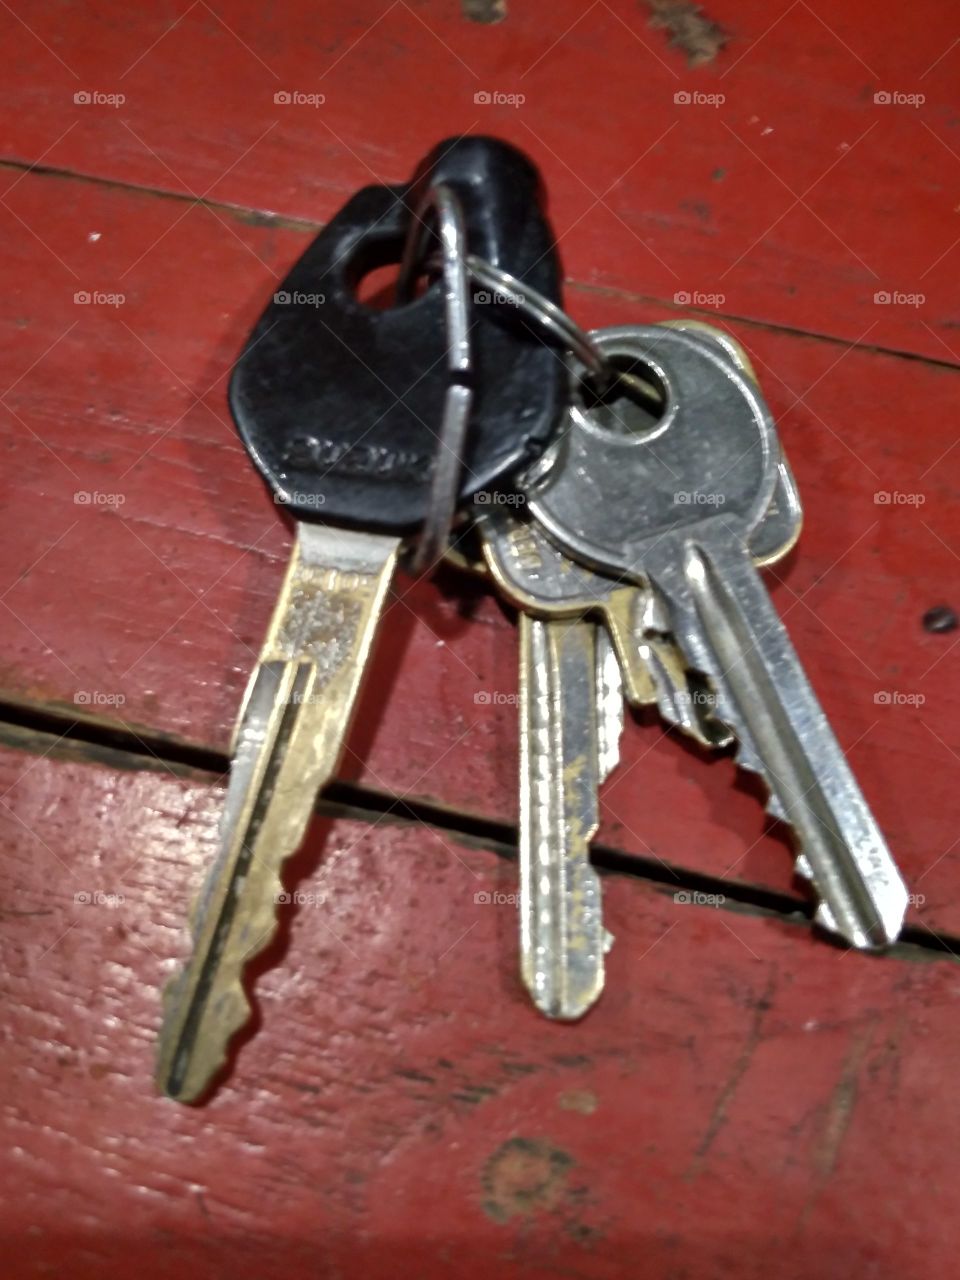 Lots of keys